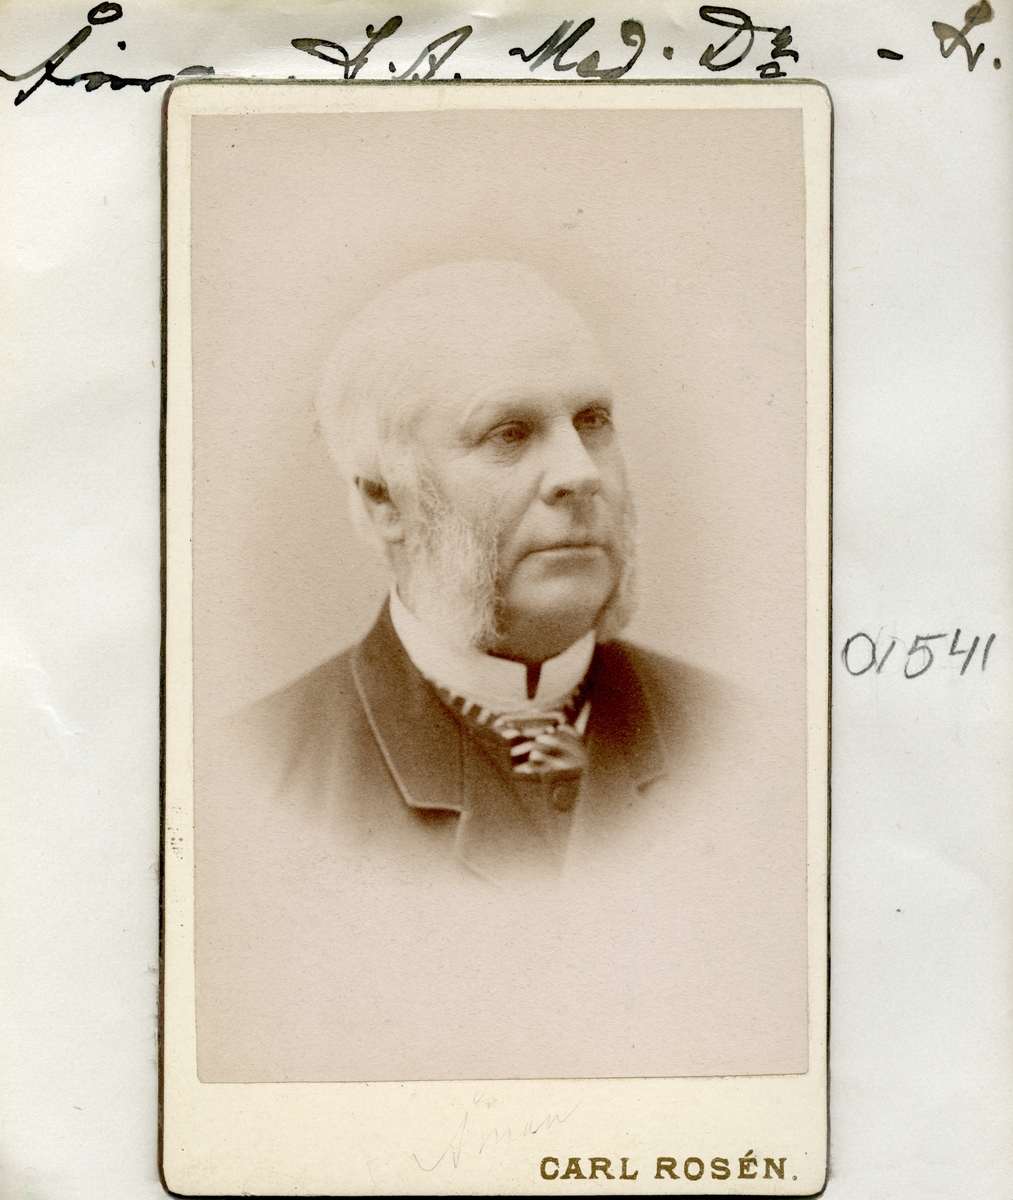 Medicine doktor Ludvig Åman på sin ålders höst. I egenskap som bataljons-, lasaretts-, fängelse- och kurhusläkare, hade han från 1852 varit praktiserande läkare i Linköping. Vid sidan av sin yrkesutövning även behjälplig i allehanda offentliga uppdrag.